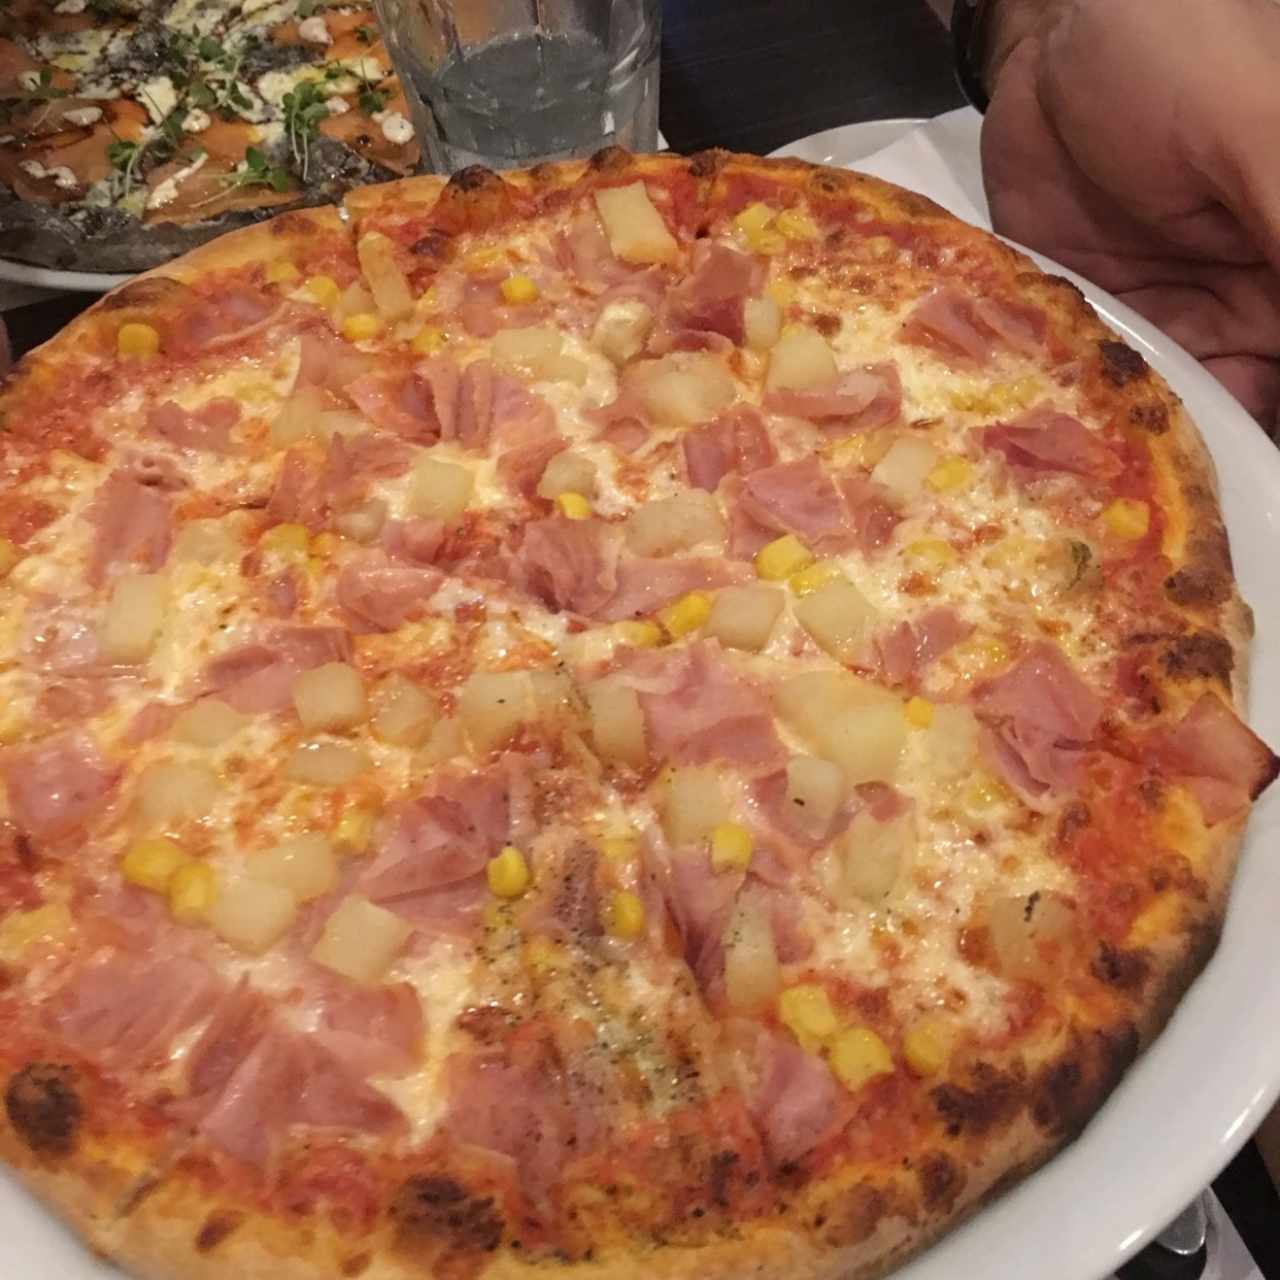 Pizzas - Hawaiiana